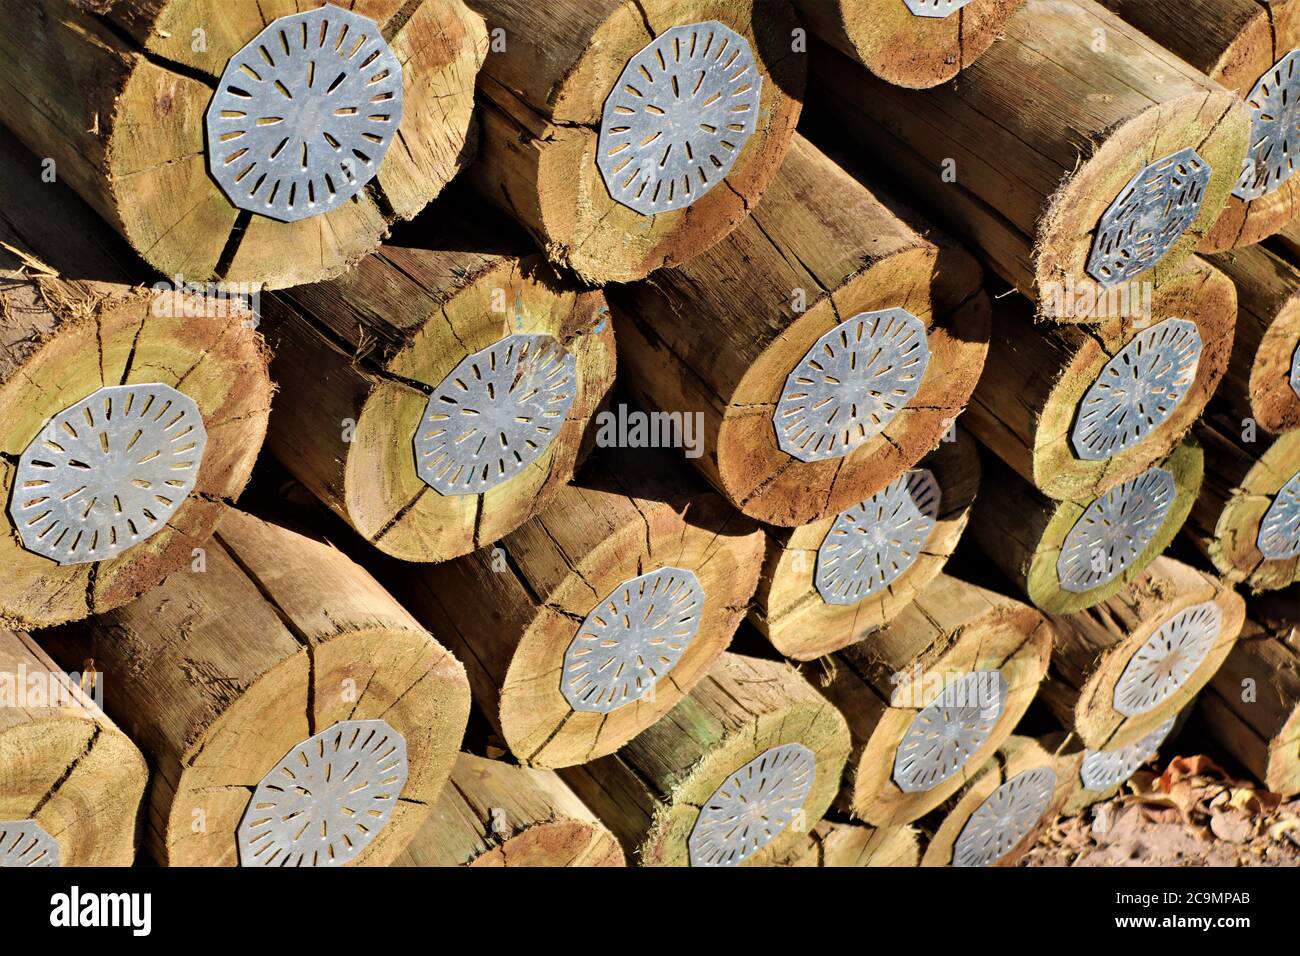 Pali di legno trattati con (CCA) questo è un conservante di legno contenente rame, cromo e arsenico. Foto Stock